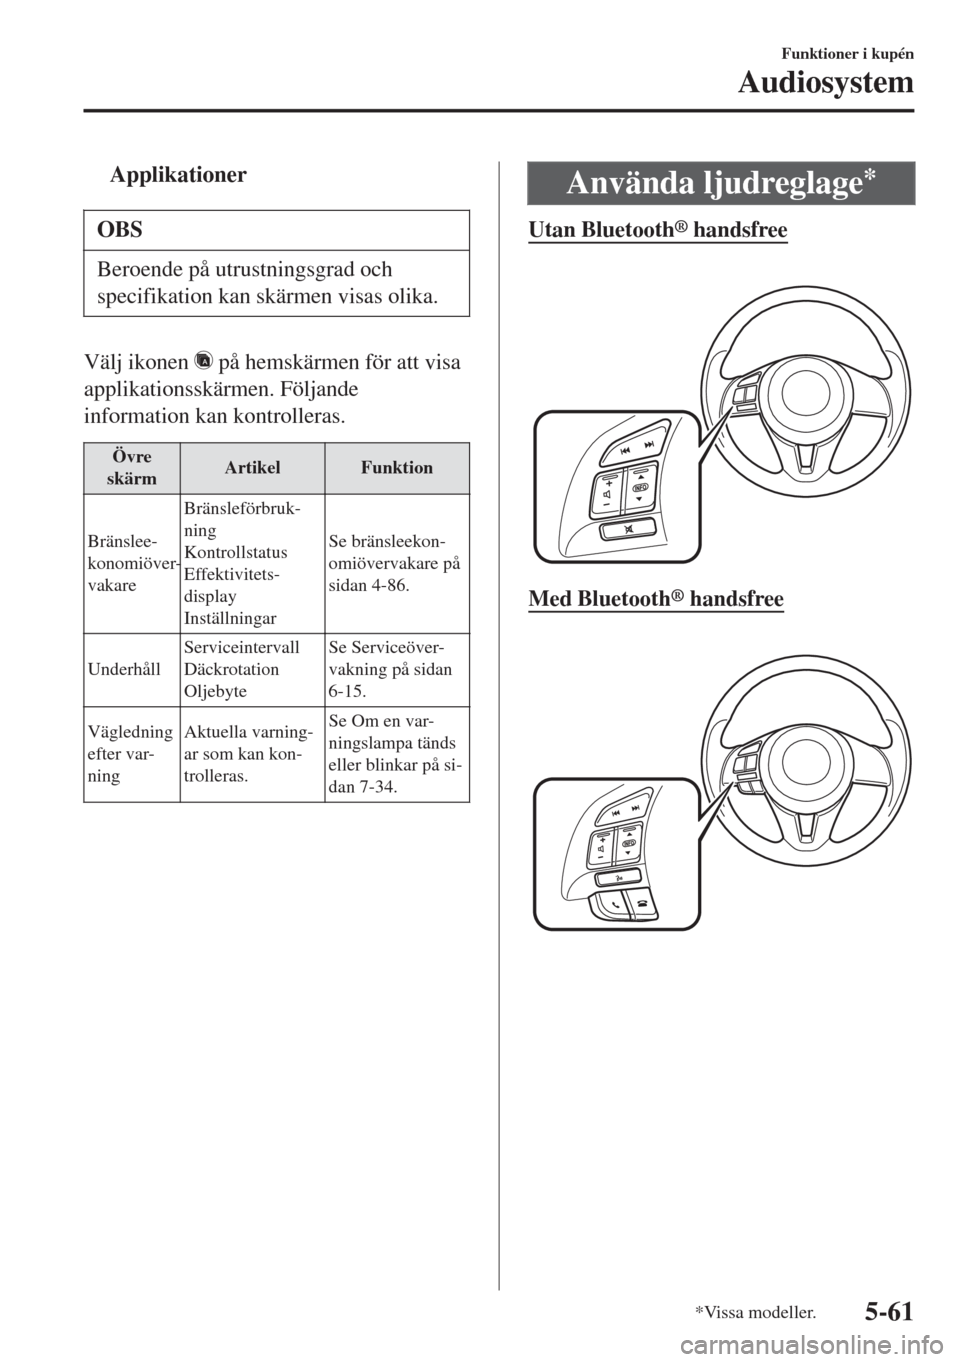 MAZDA MODEL CX-3 2015  Ägarmanual (in Swedish) tApplikationer
OBS
Beroende på utrustningsgrad och
specifikation kan skärmen visas olika.
Välj ikonen  på hemskärmen för att visa
applikationsskärmen. Följande
information kan kontrolleras.
Ö